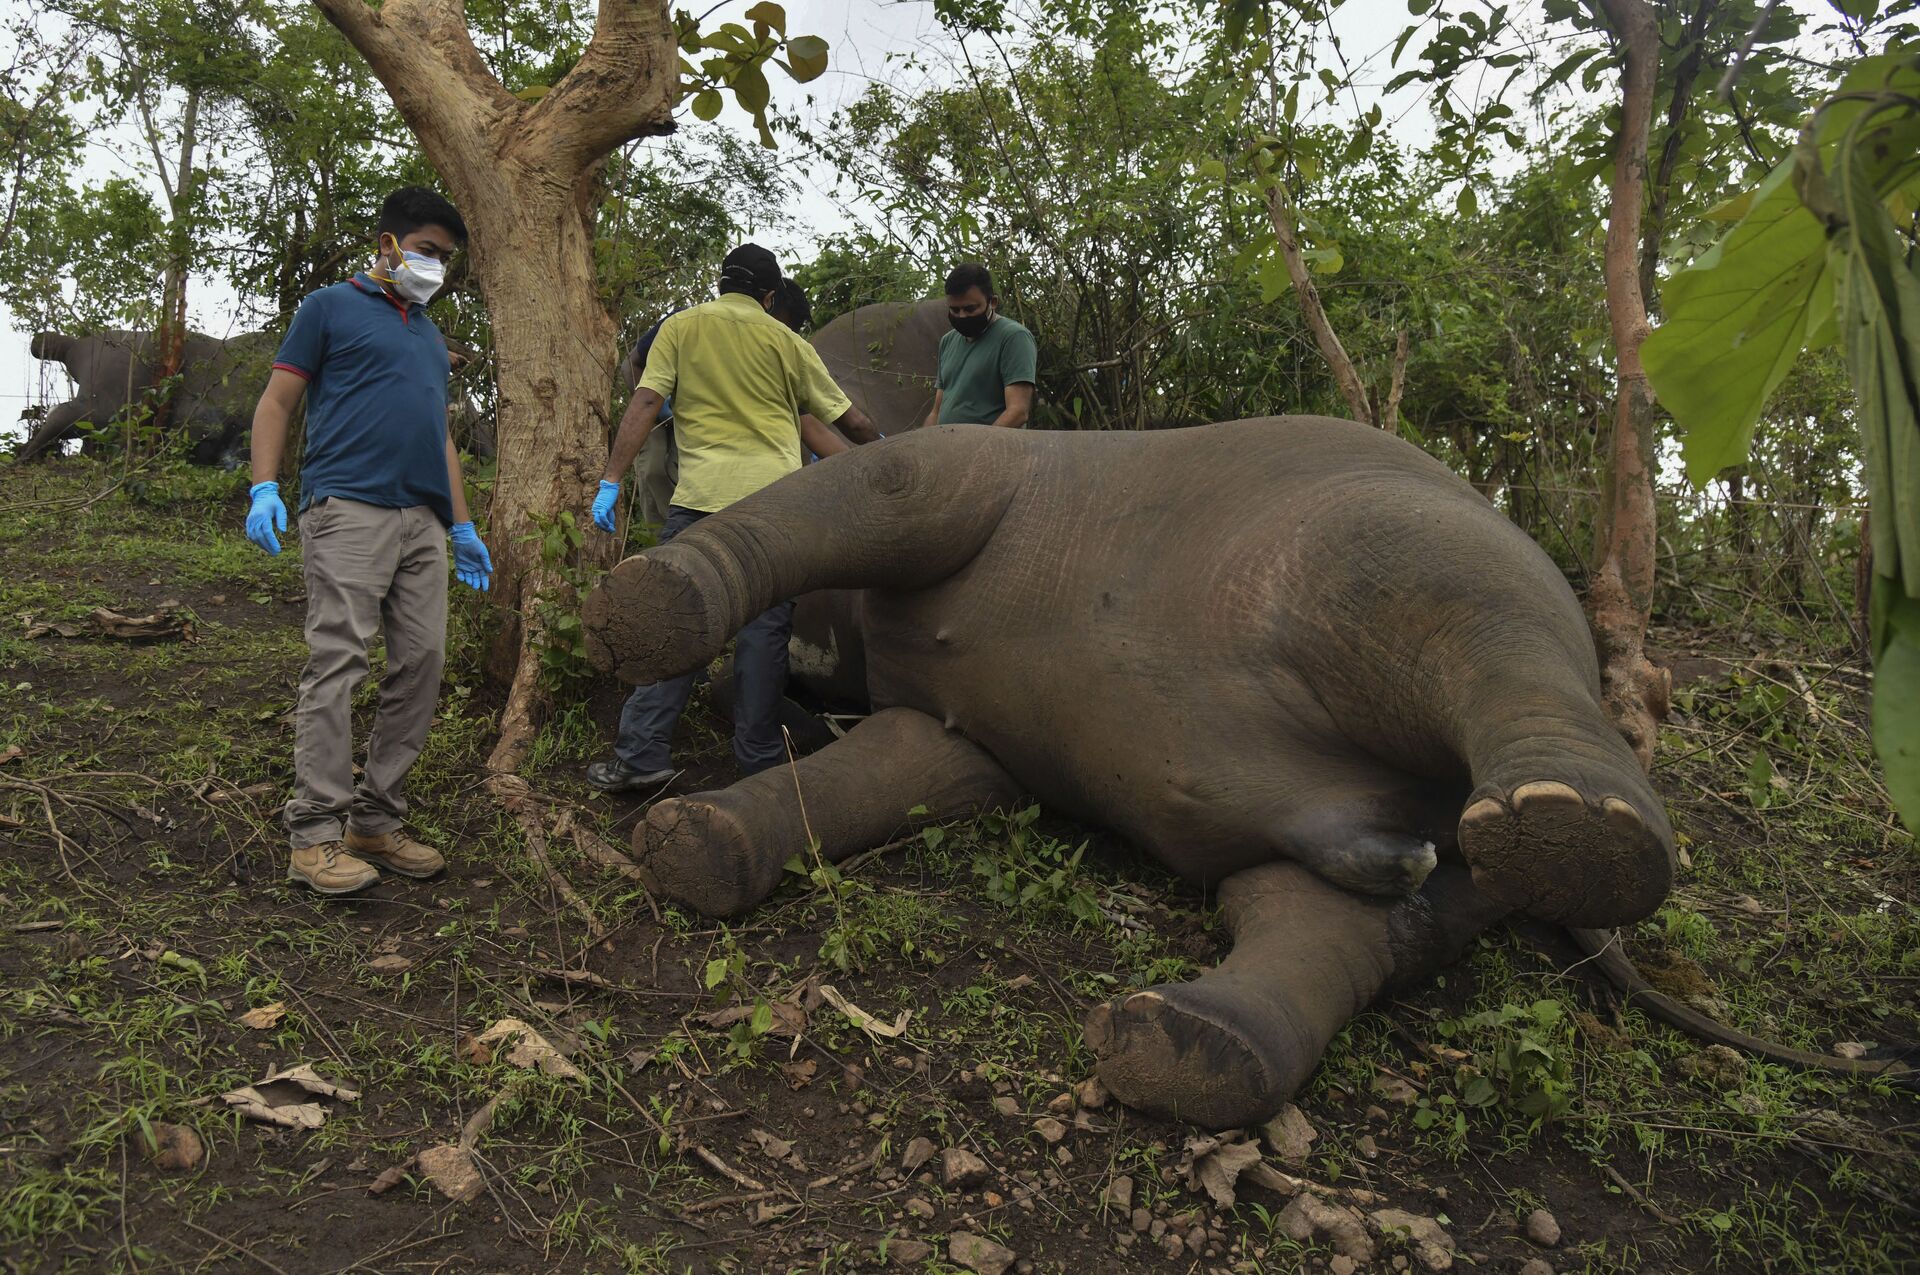 Dezoito elefantes achados sem vida por razão desconhecida na Índia (FOTO) - Sputnik Brasil, 1920, 14.05.2021